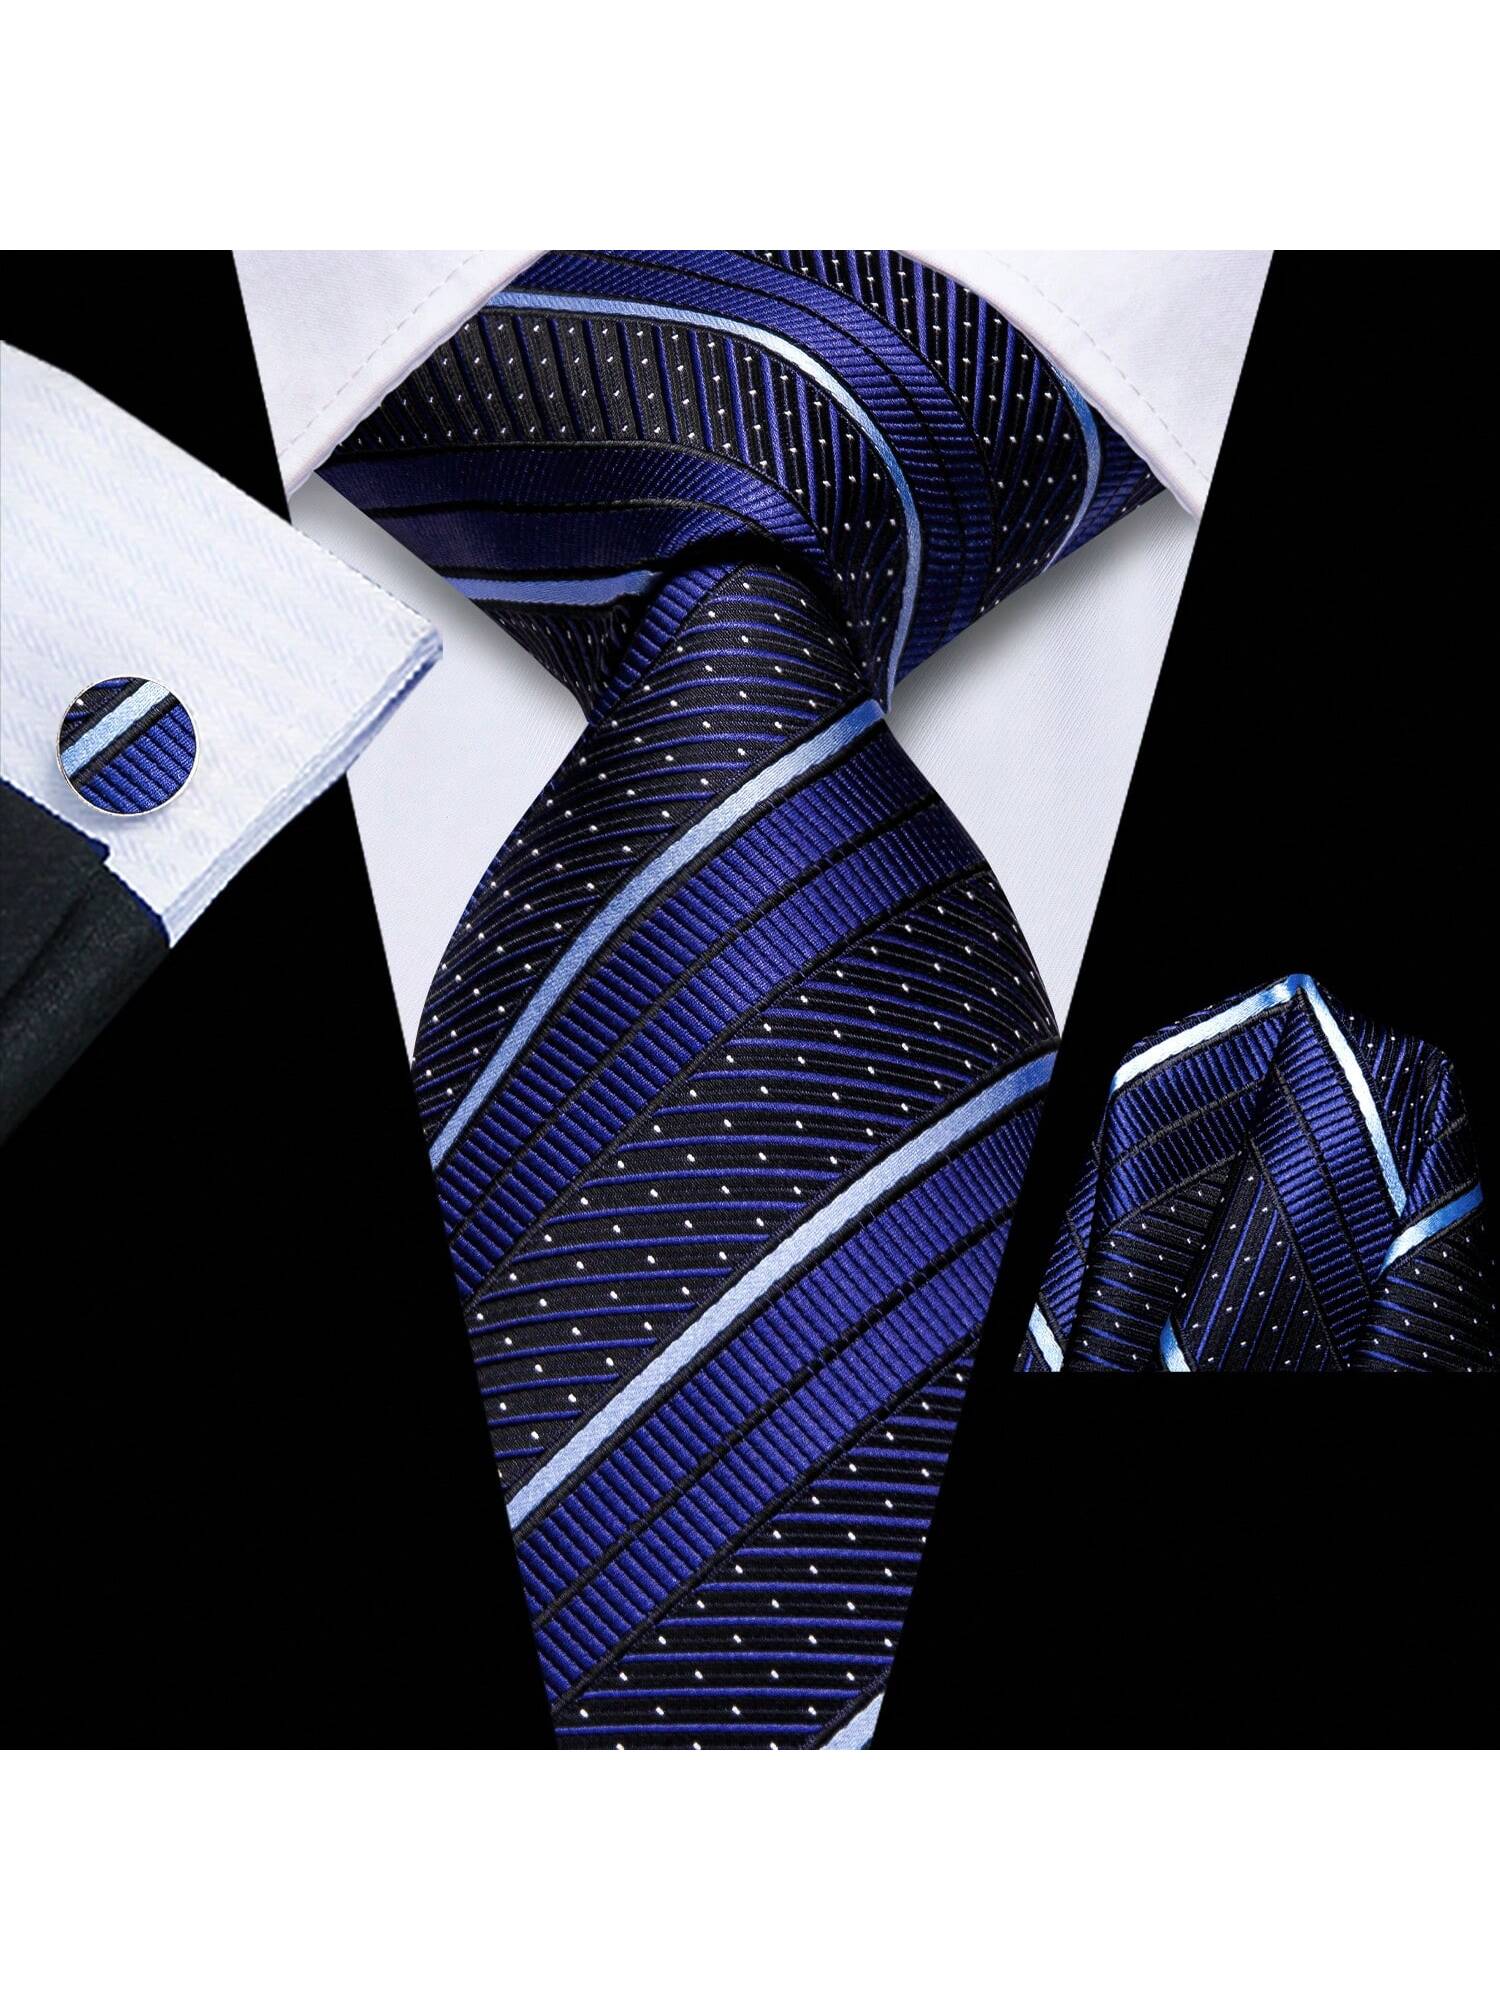 dibangu мужской галстук шелковый красный синий однотонный свадебный галстук карманные квадратные запонки зажим набор пейсли желтый Шелковый мужской галстук Hi-Tie, темно-синий